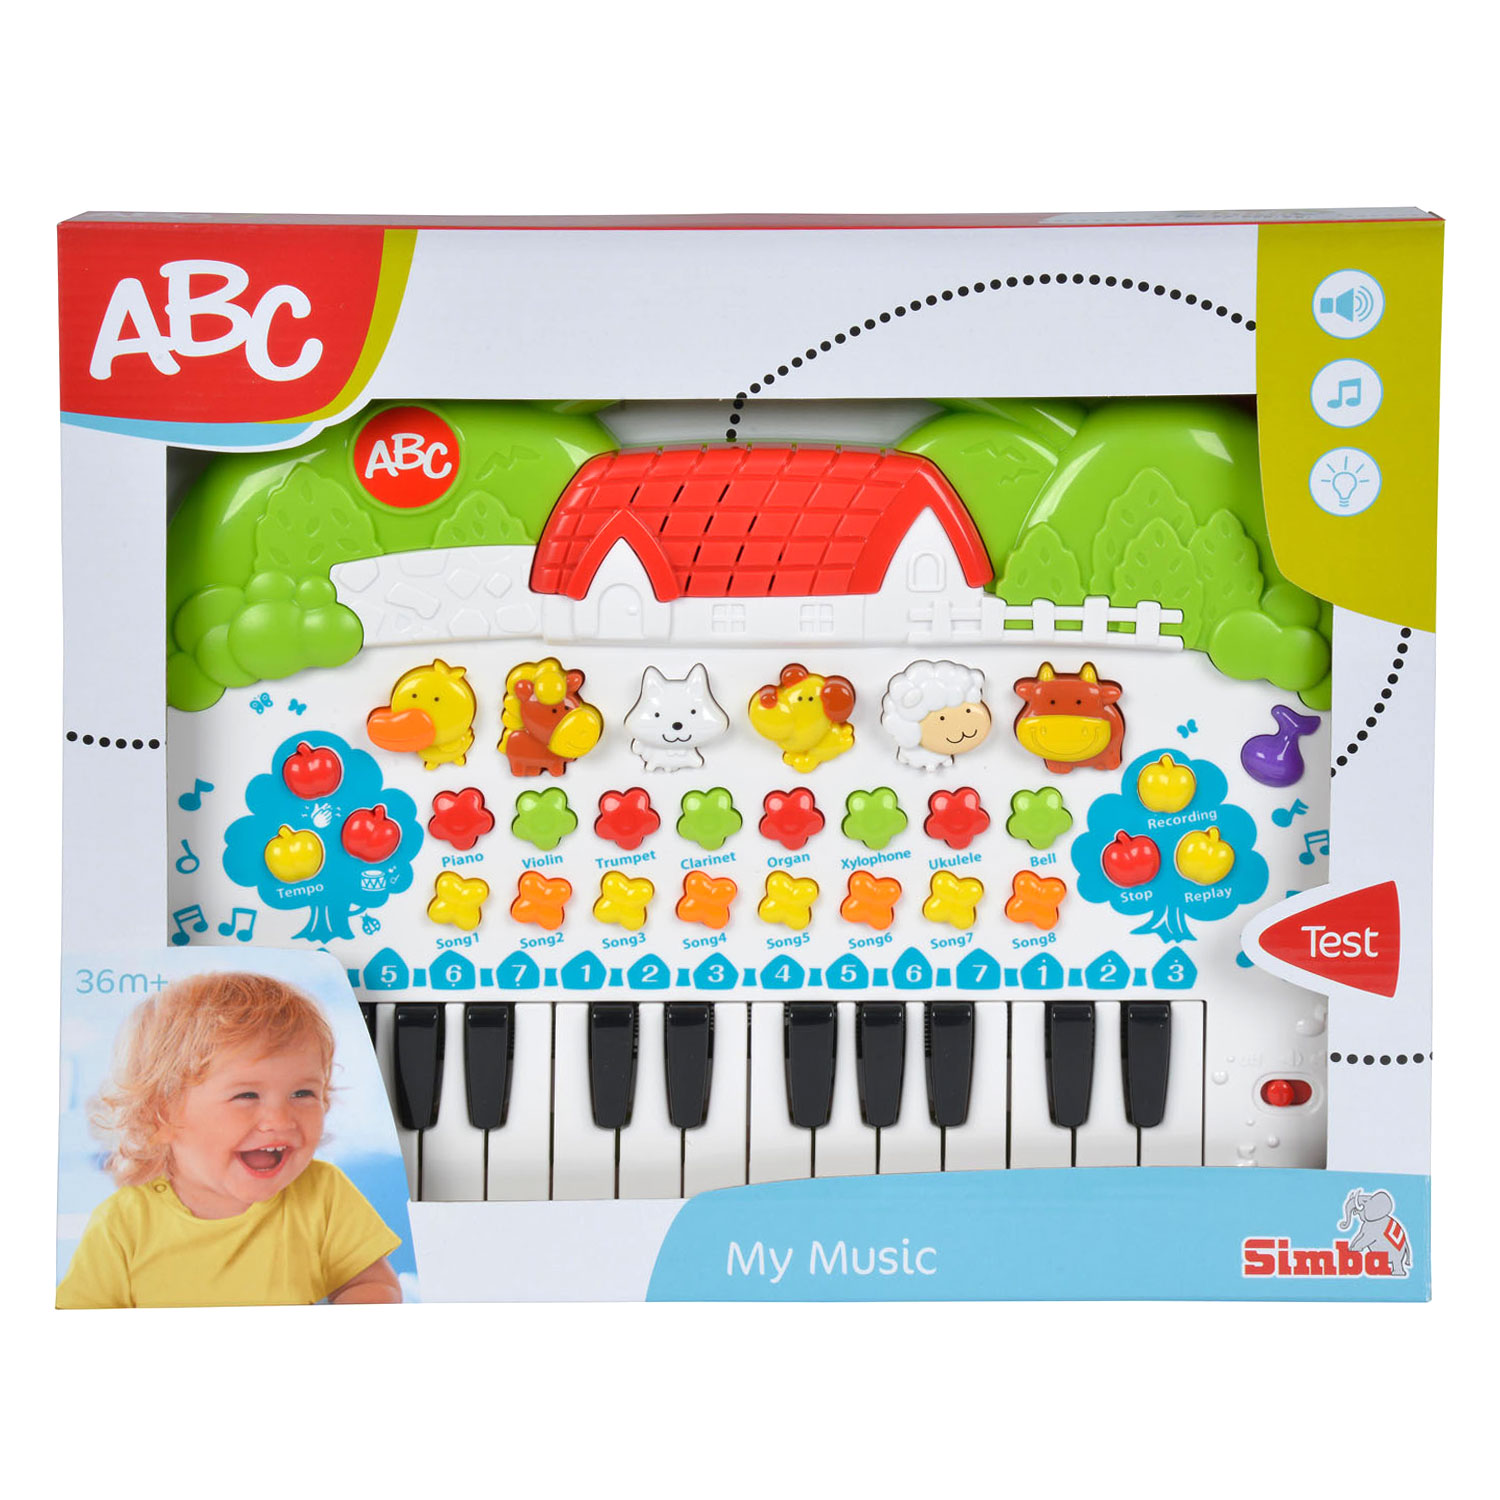 ABC Dieren Keyboard